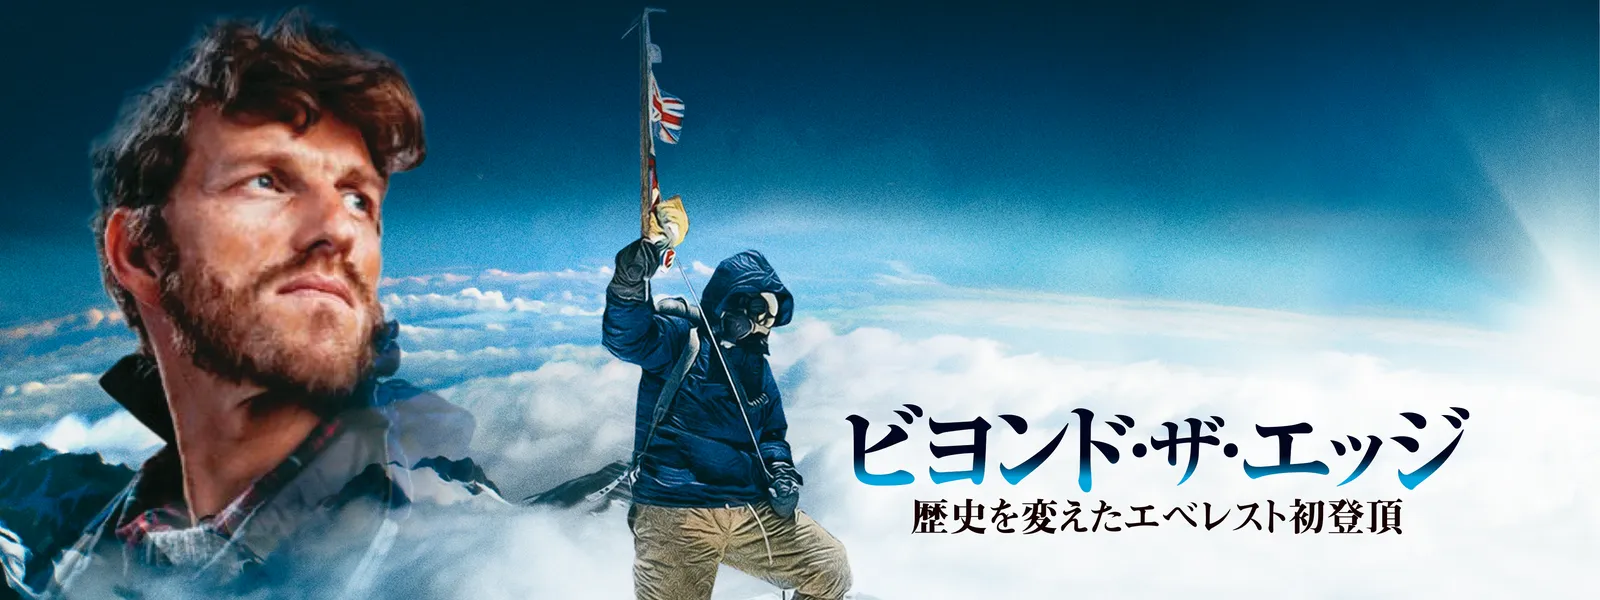 ビヨンド・ザ・エッジ 歴史を変えたエベレスト初登頂 [Blu-ray] d2ldlup